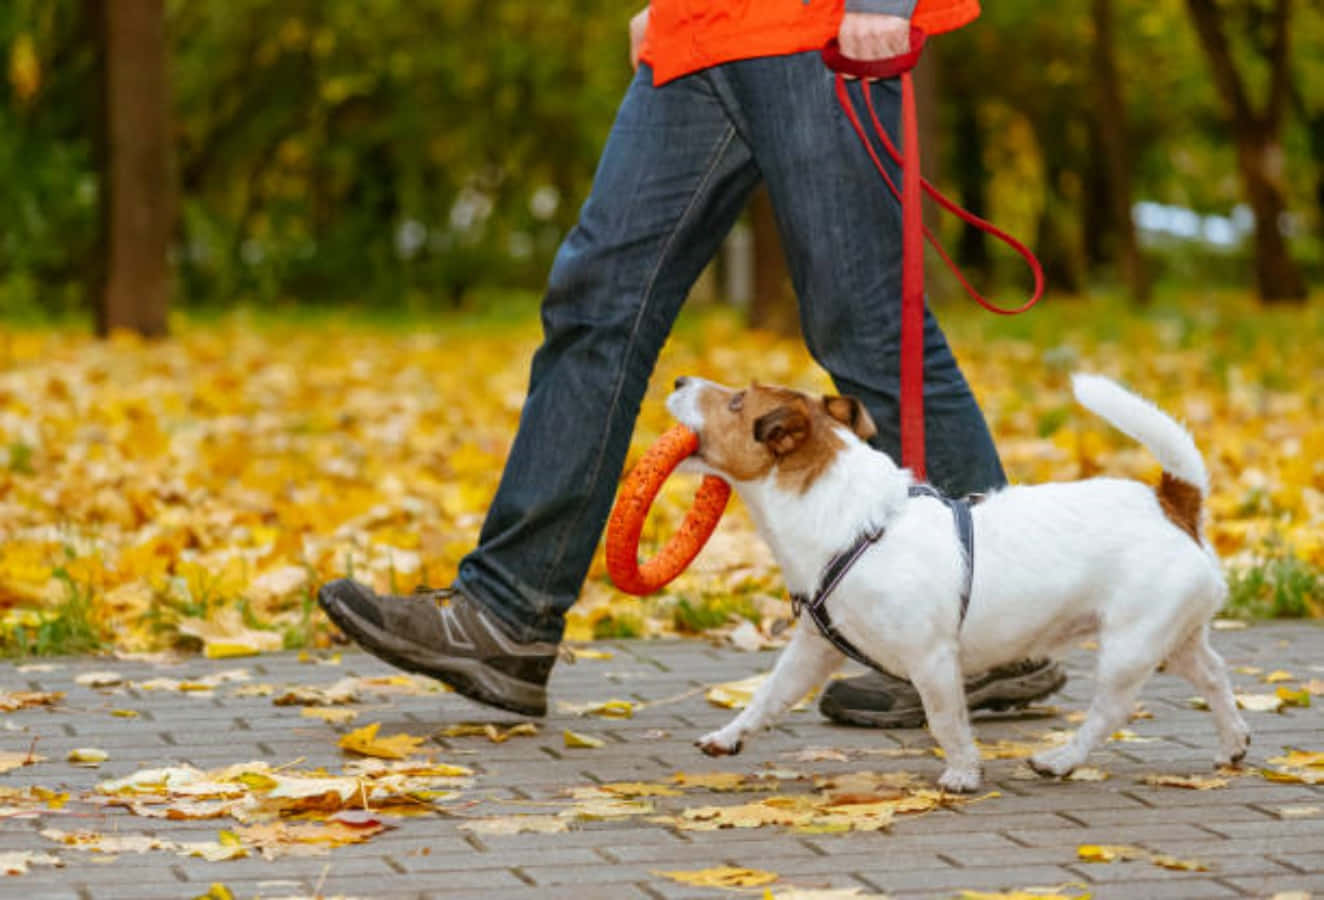 A Joyful Stroll - Friendly Canine Enjoying a Walk Outdoors